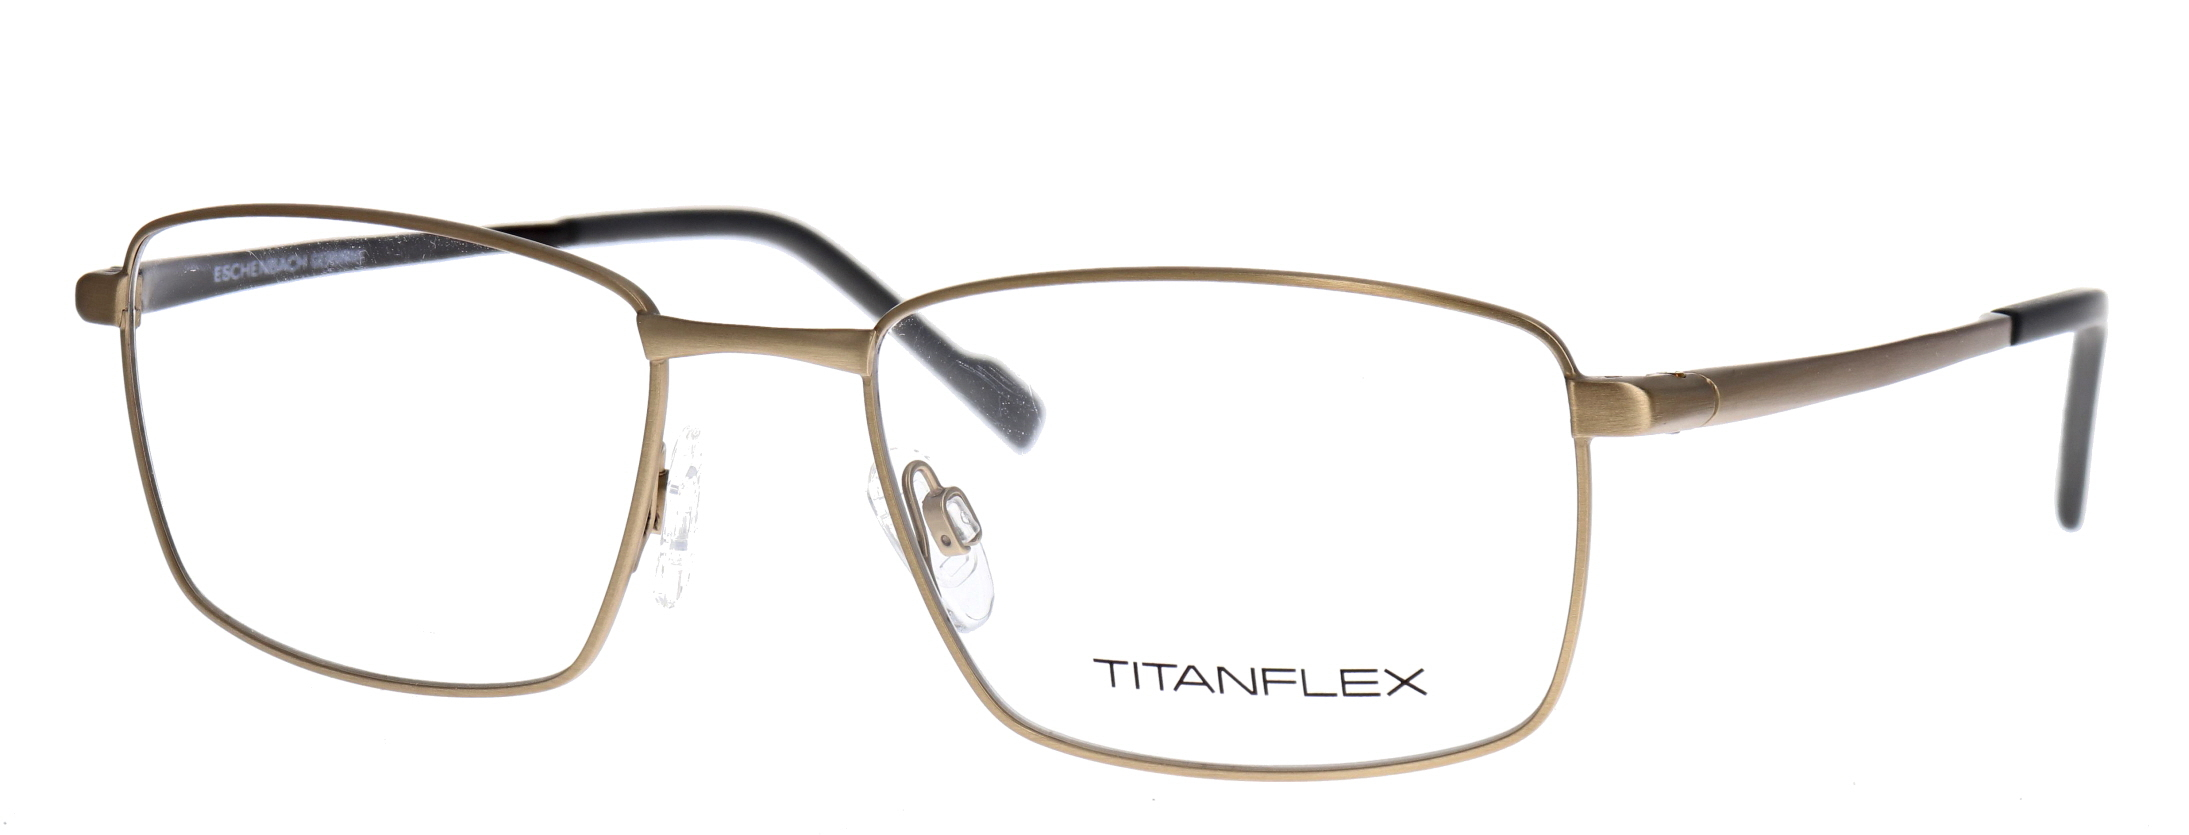 Titanflex 820793